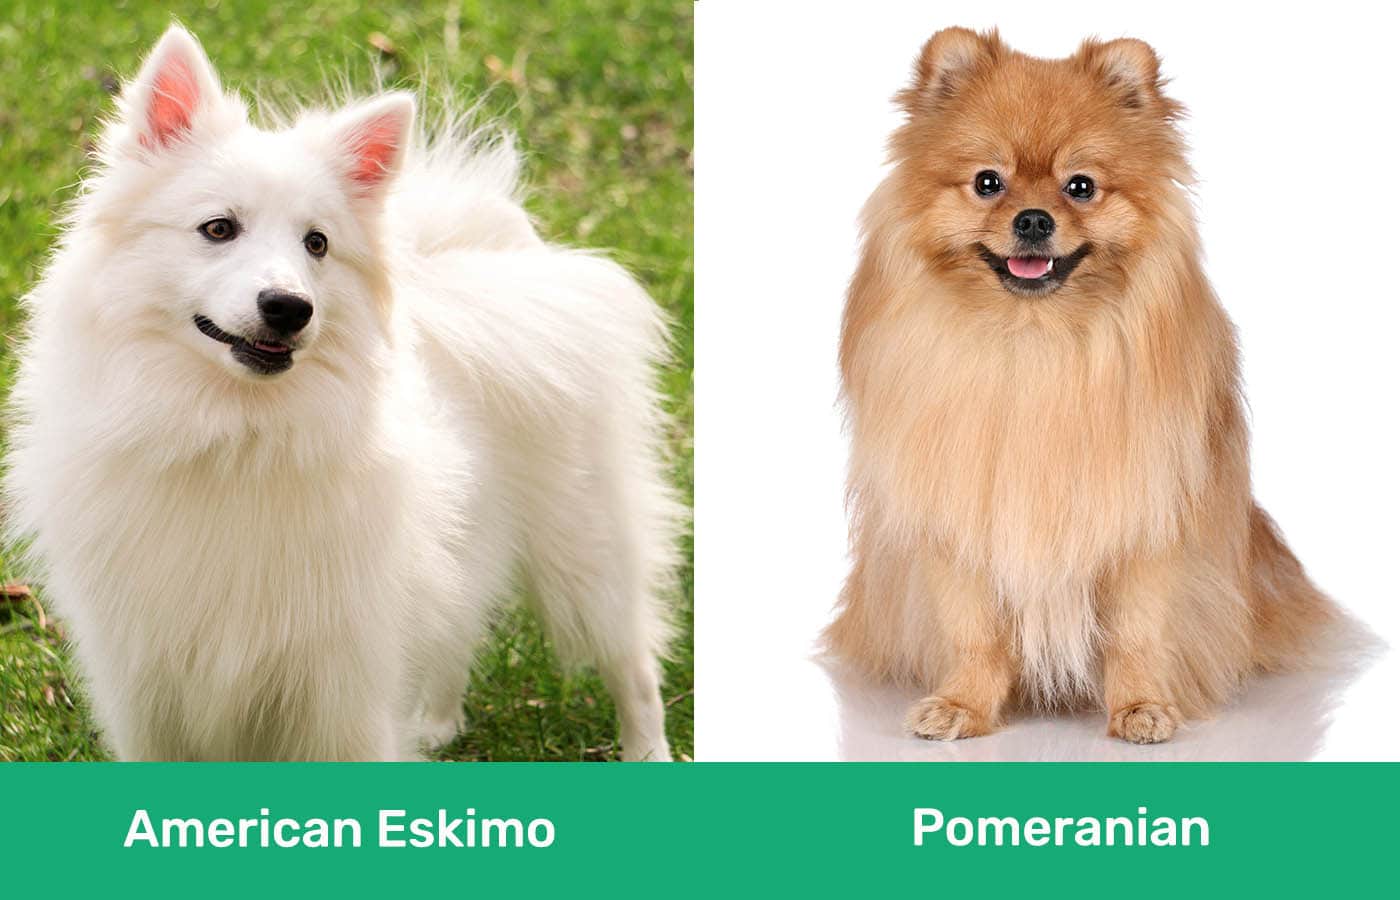 American Eskimo vs Pomeranian side by side